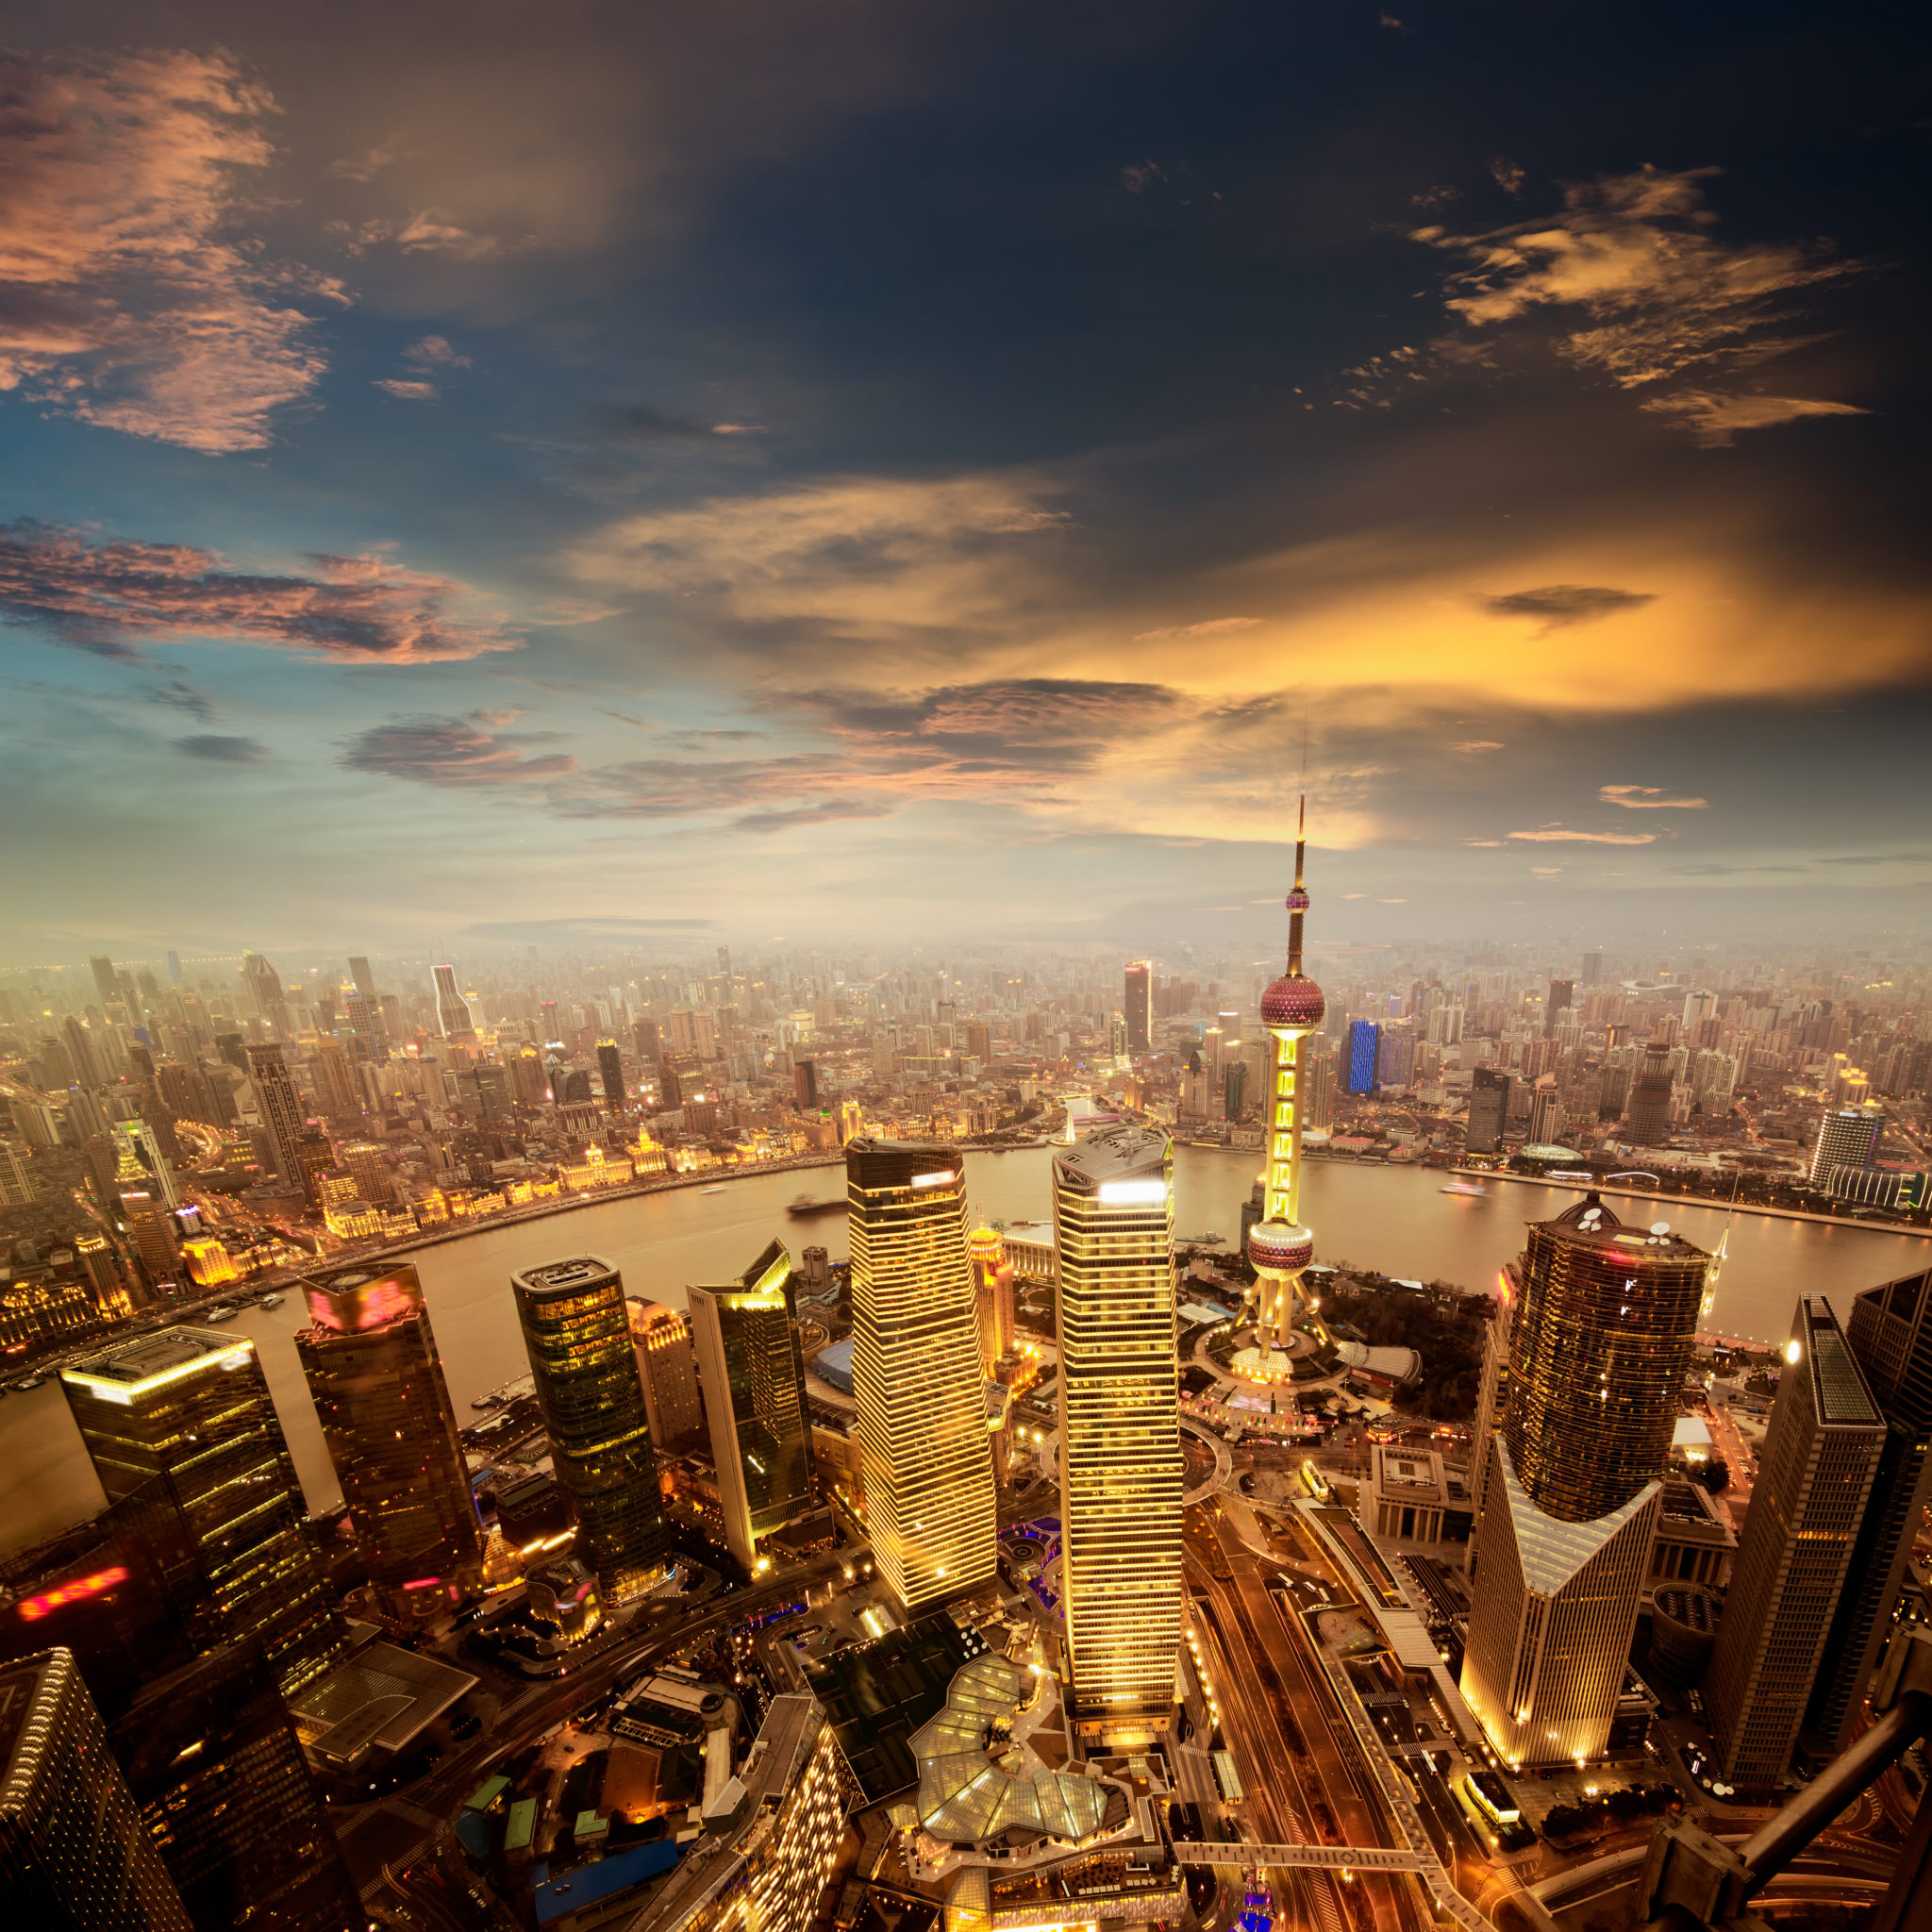 Shanghai image via Shutterstock.